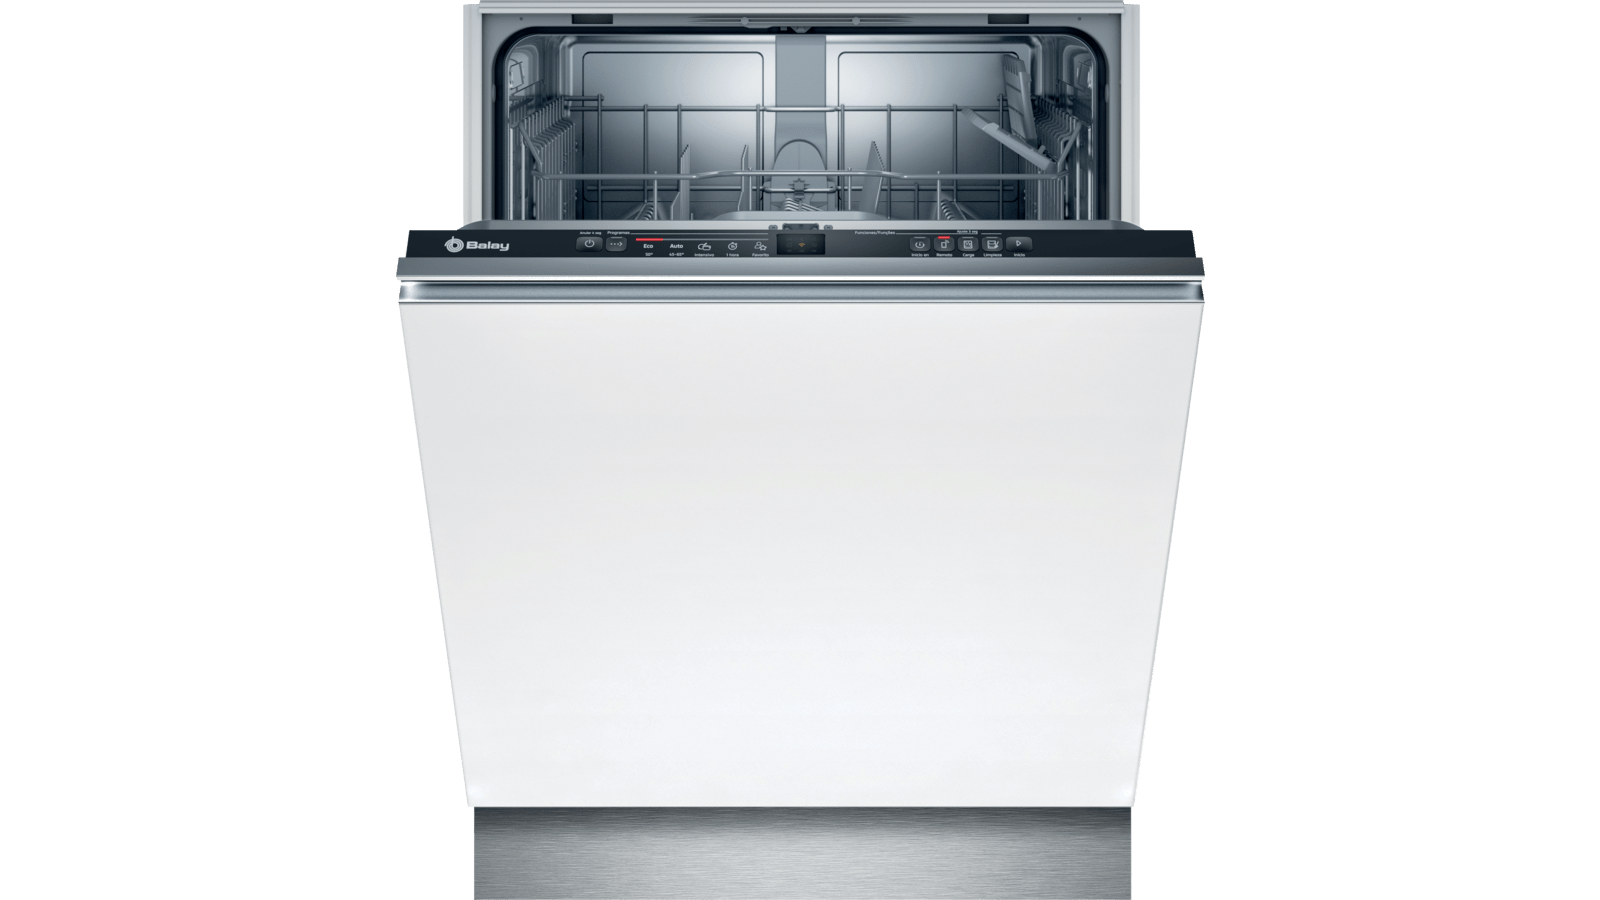 Congeladores verticales · Balay · Electrodomésticos · El Corte Inglés (3)